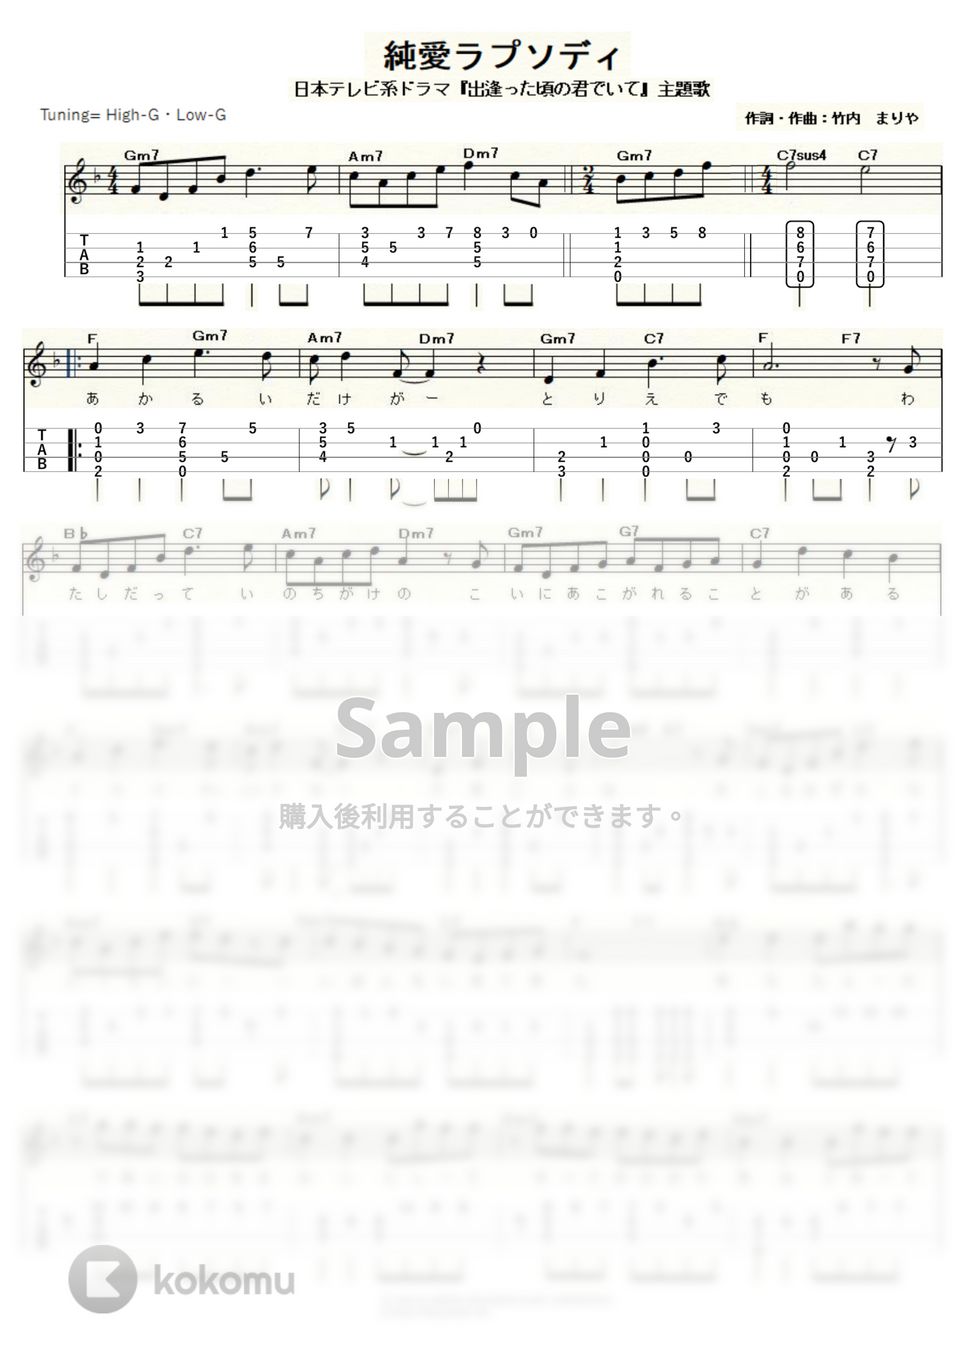 竹内まりや - 純愛ラプソディ (ｳｸﾚﾚｿﾛ/High-G・Low-G/中級) by ukulelepapa